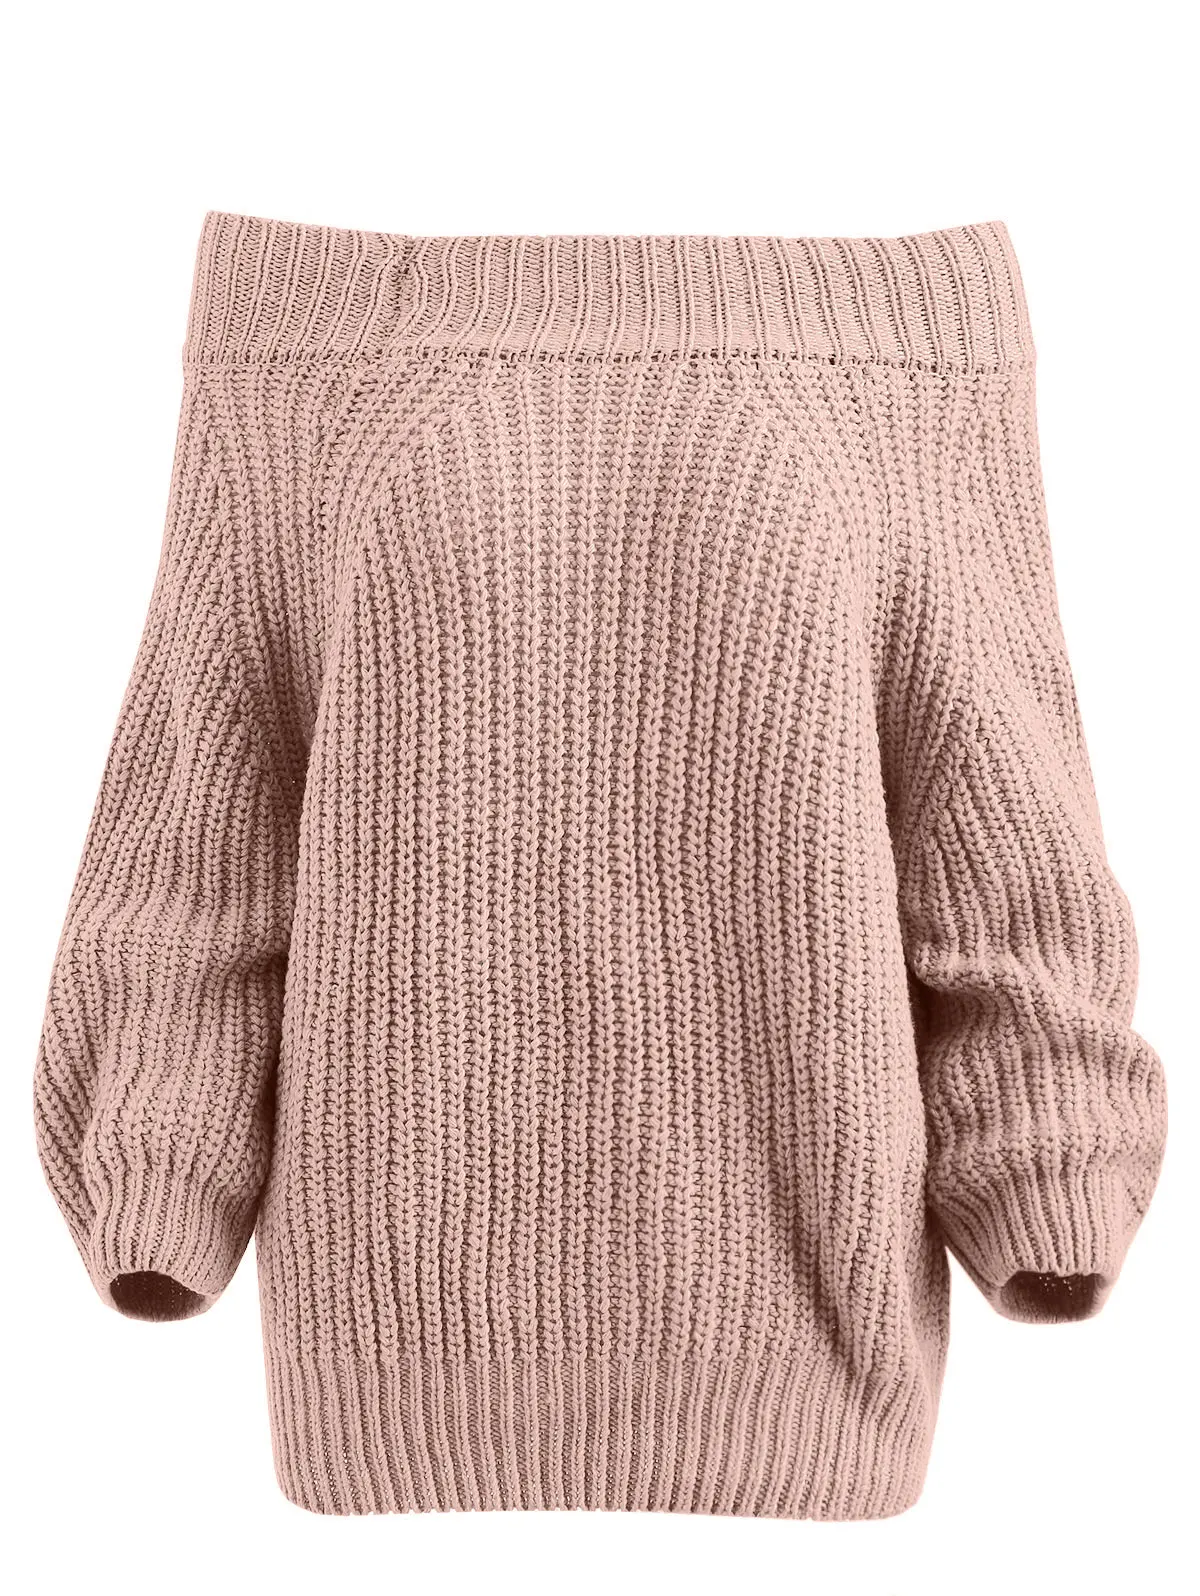 Женский свитер с вырезом лодочкой Wipalo теплый открытыми плечами на осень и зиму